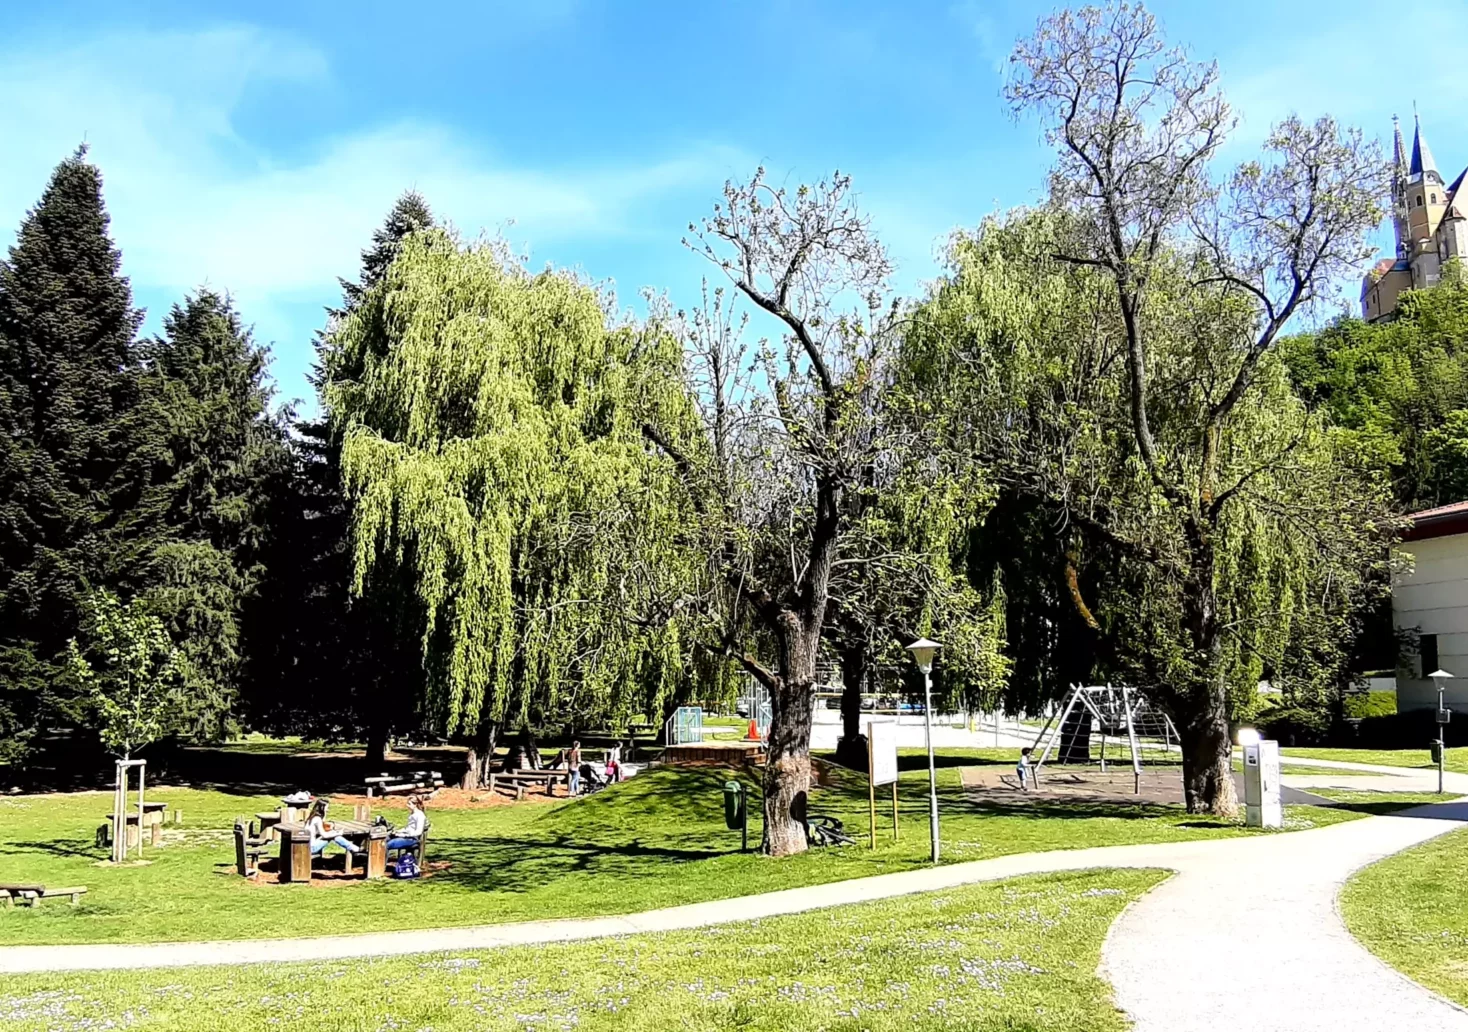 Bild auf 5min.at zeigt den Park in Judenburg in der Steiermark.